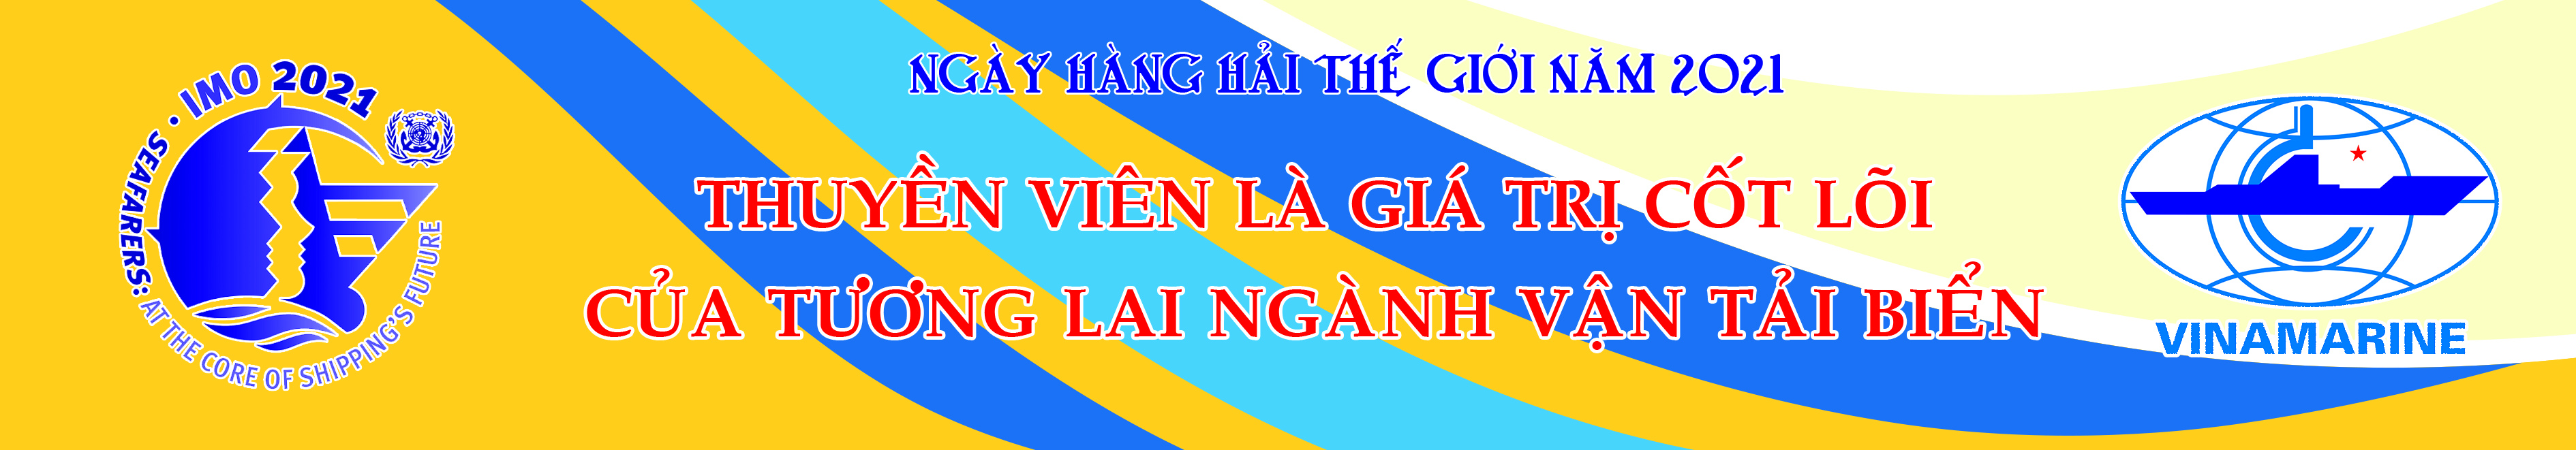 Thư ngỏ nhân Ngày Hàng hải Thế giới năm 2021 của lãnh đạo Cục Hàng hải Việt Nam